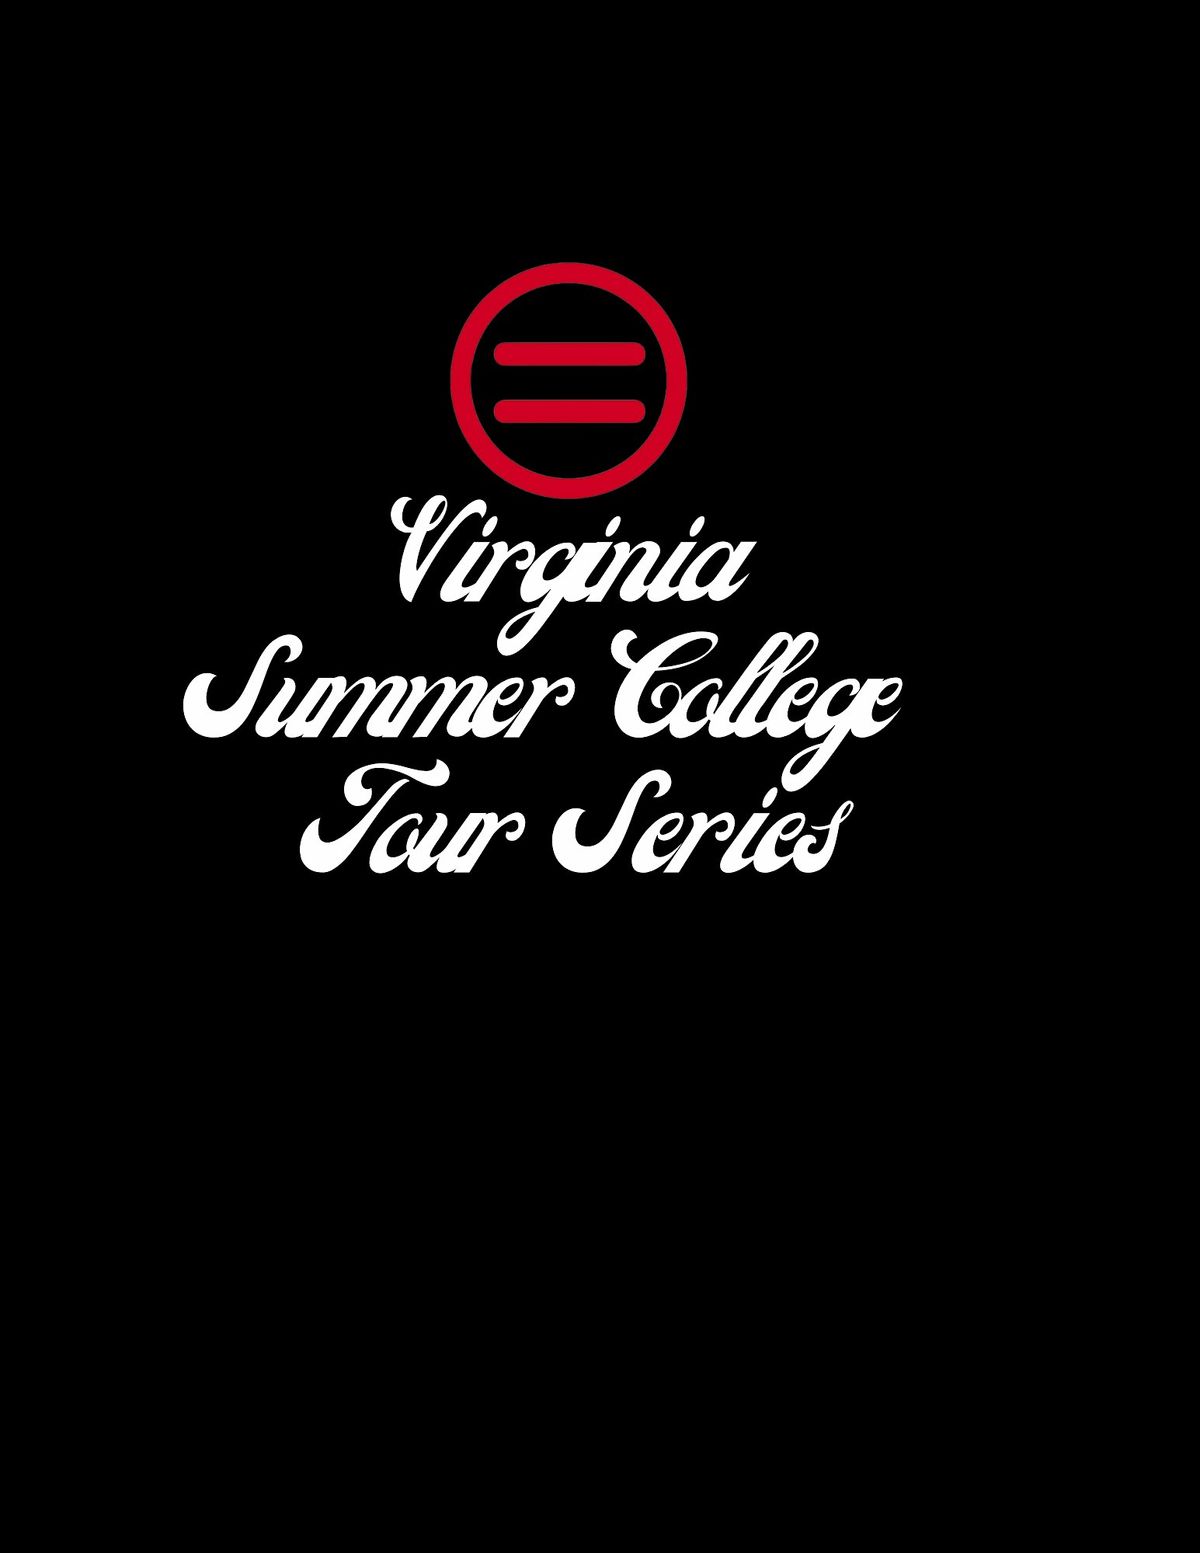 Summer College Tours - Virginia Tech